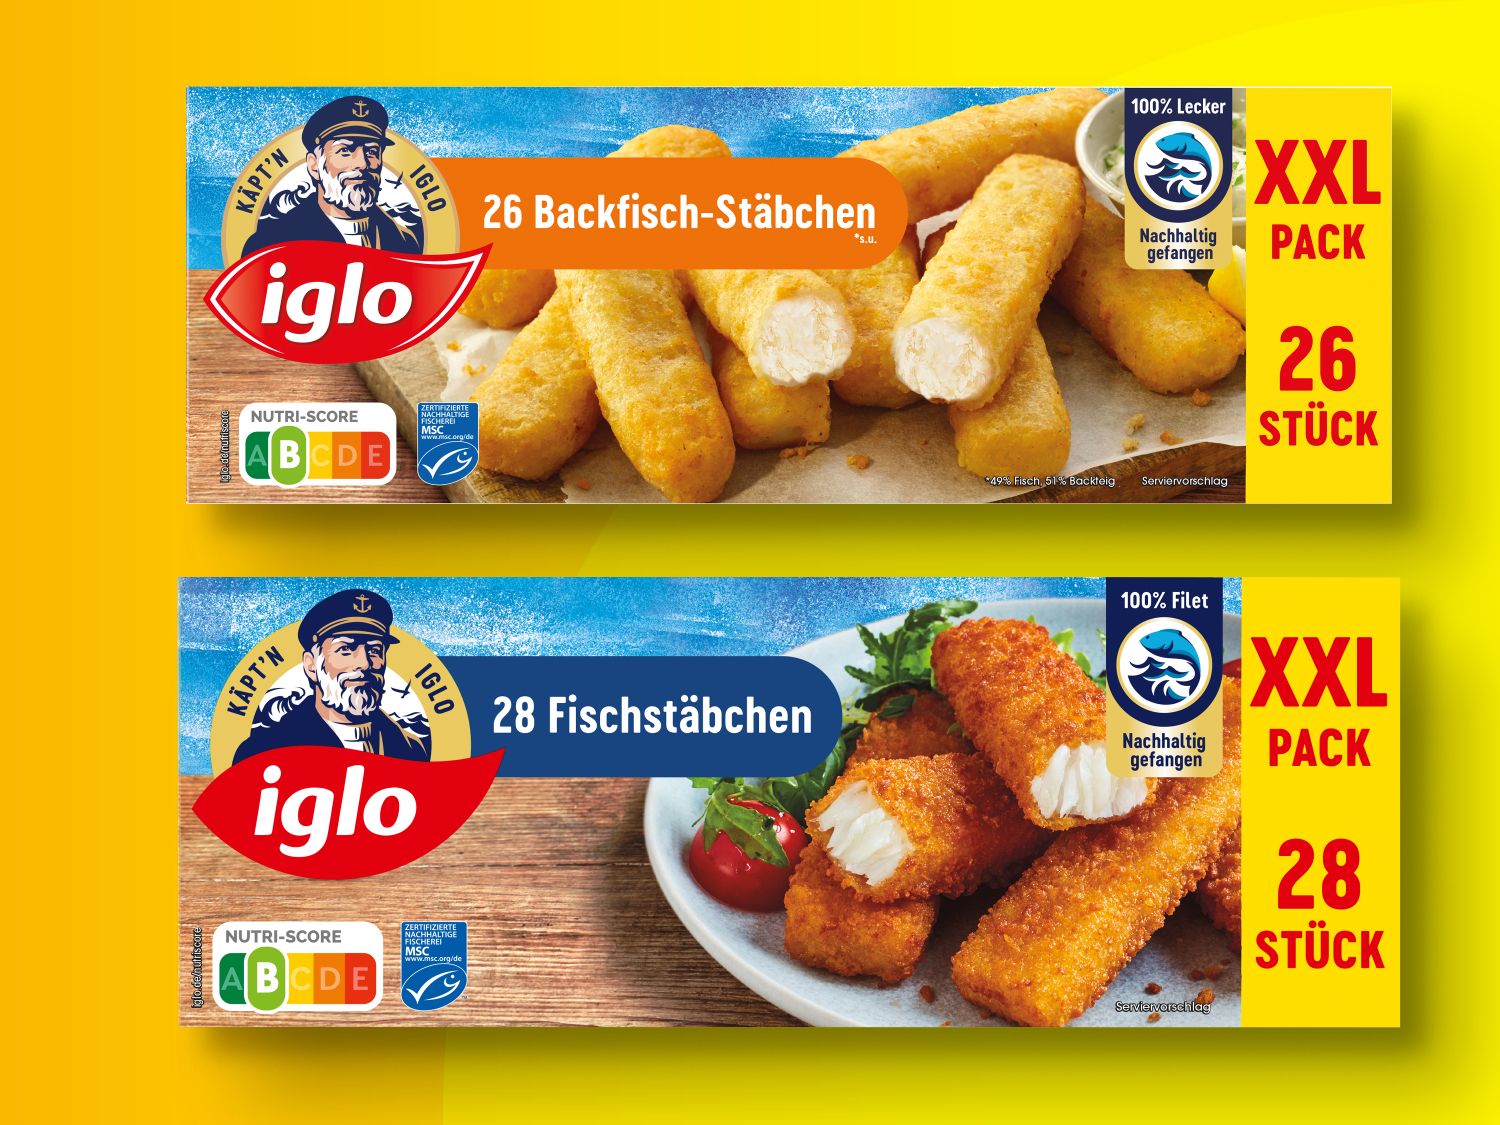 Fisch-/Backfisch-Stäbchen Lidl Iglo Deutschland -